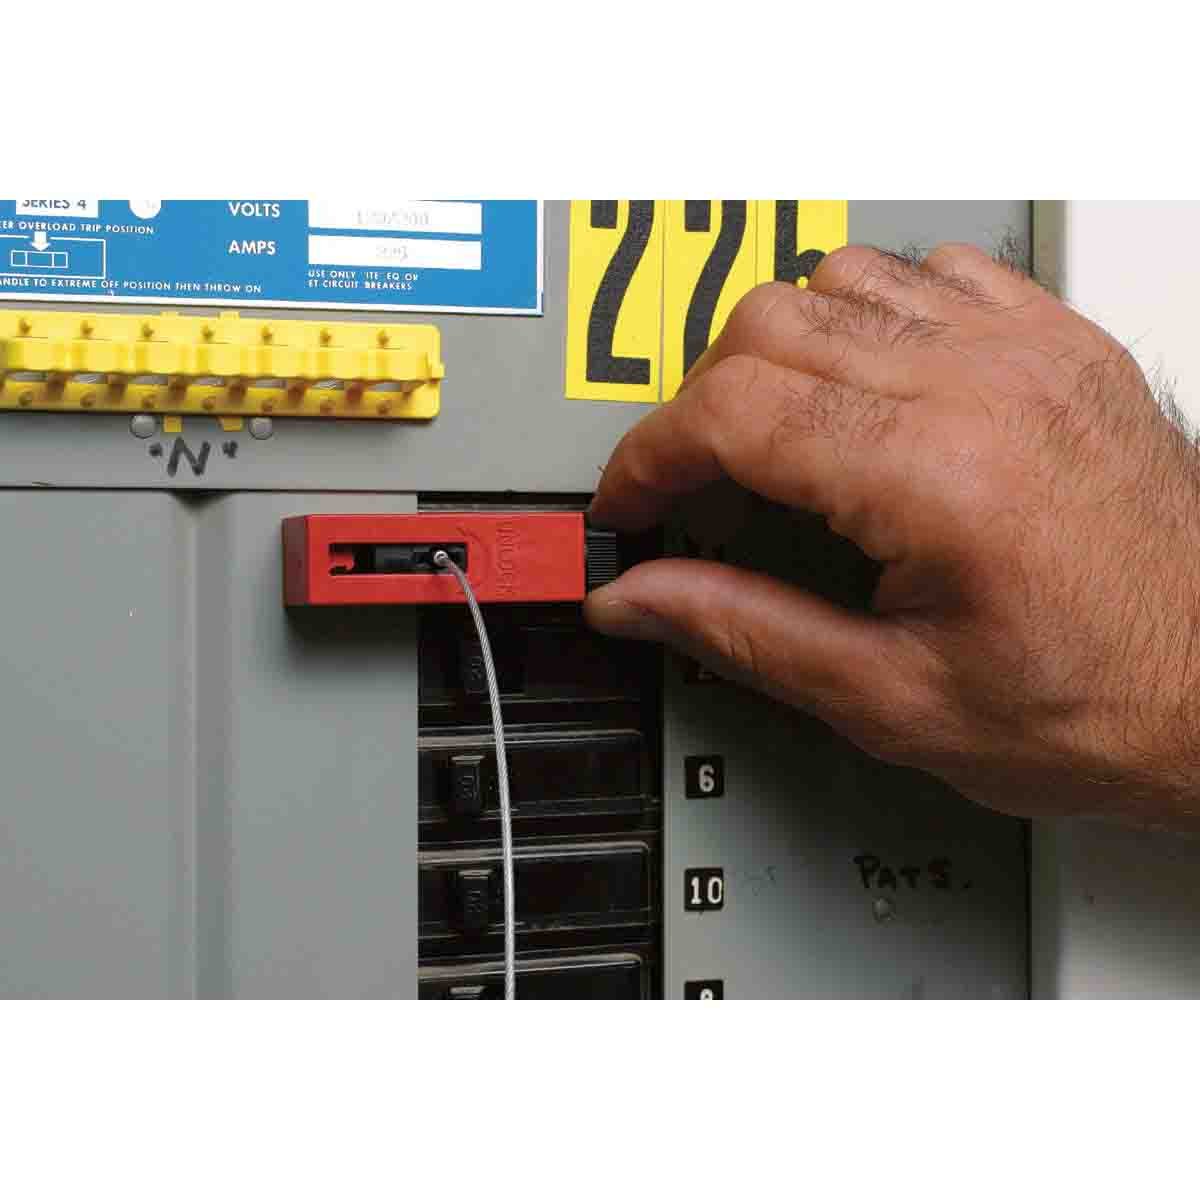 Блокираторы для выключателей EZ Panel Loc Snap-On Brady блокиратор,длина троса может использоваться совместно с дополнительным самоклеящимся держателем,в упаковке, 0.61 м, 6 шт - 1